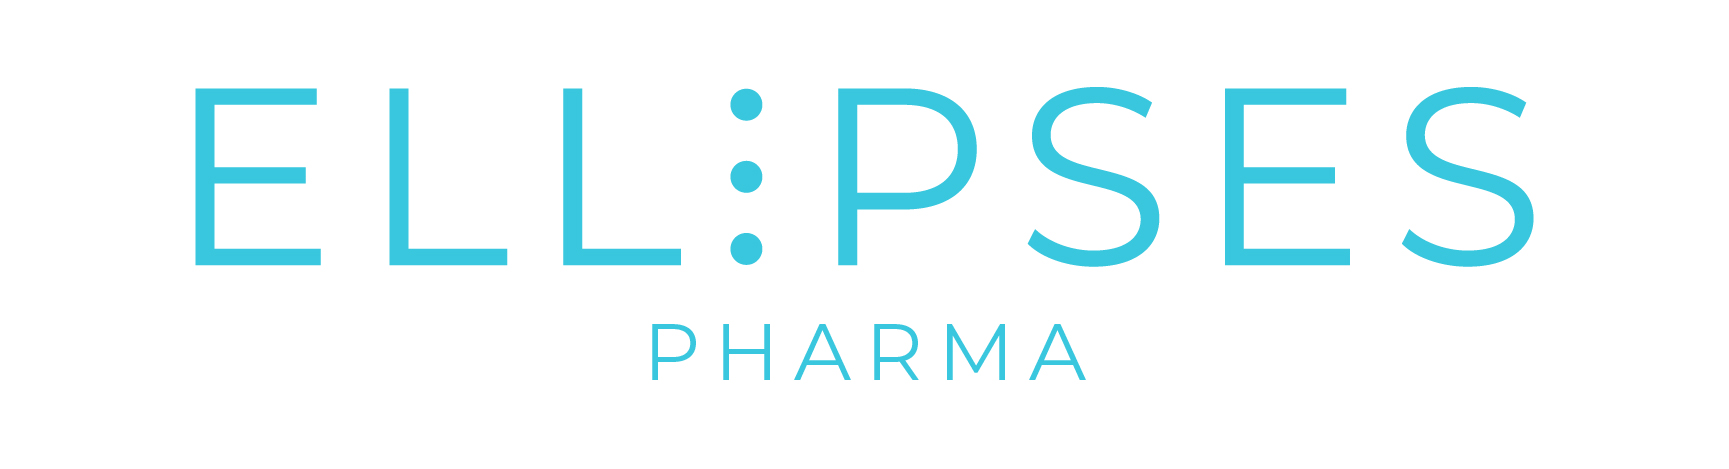 Ellipses Pharma